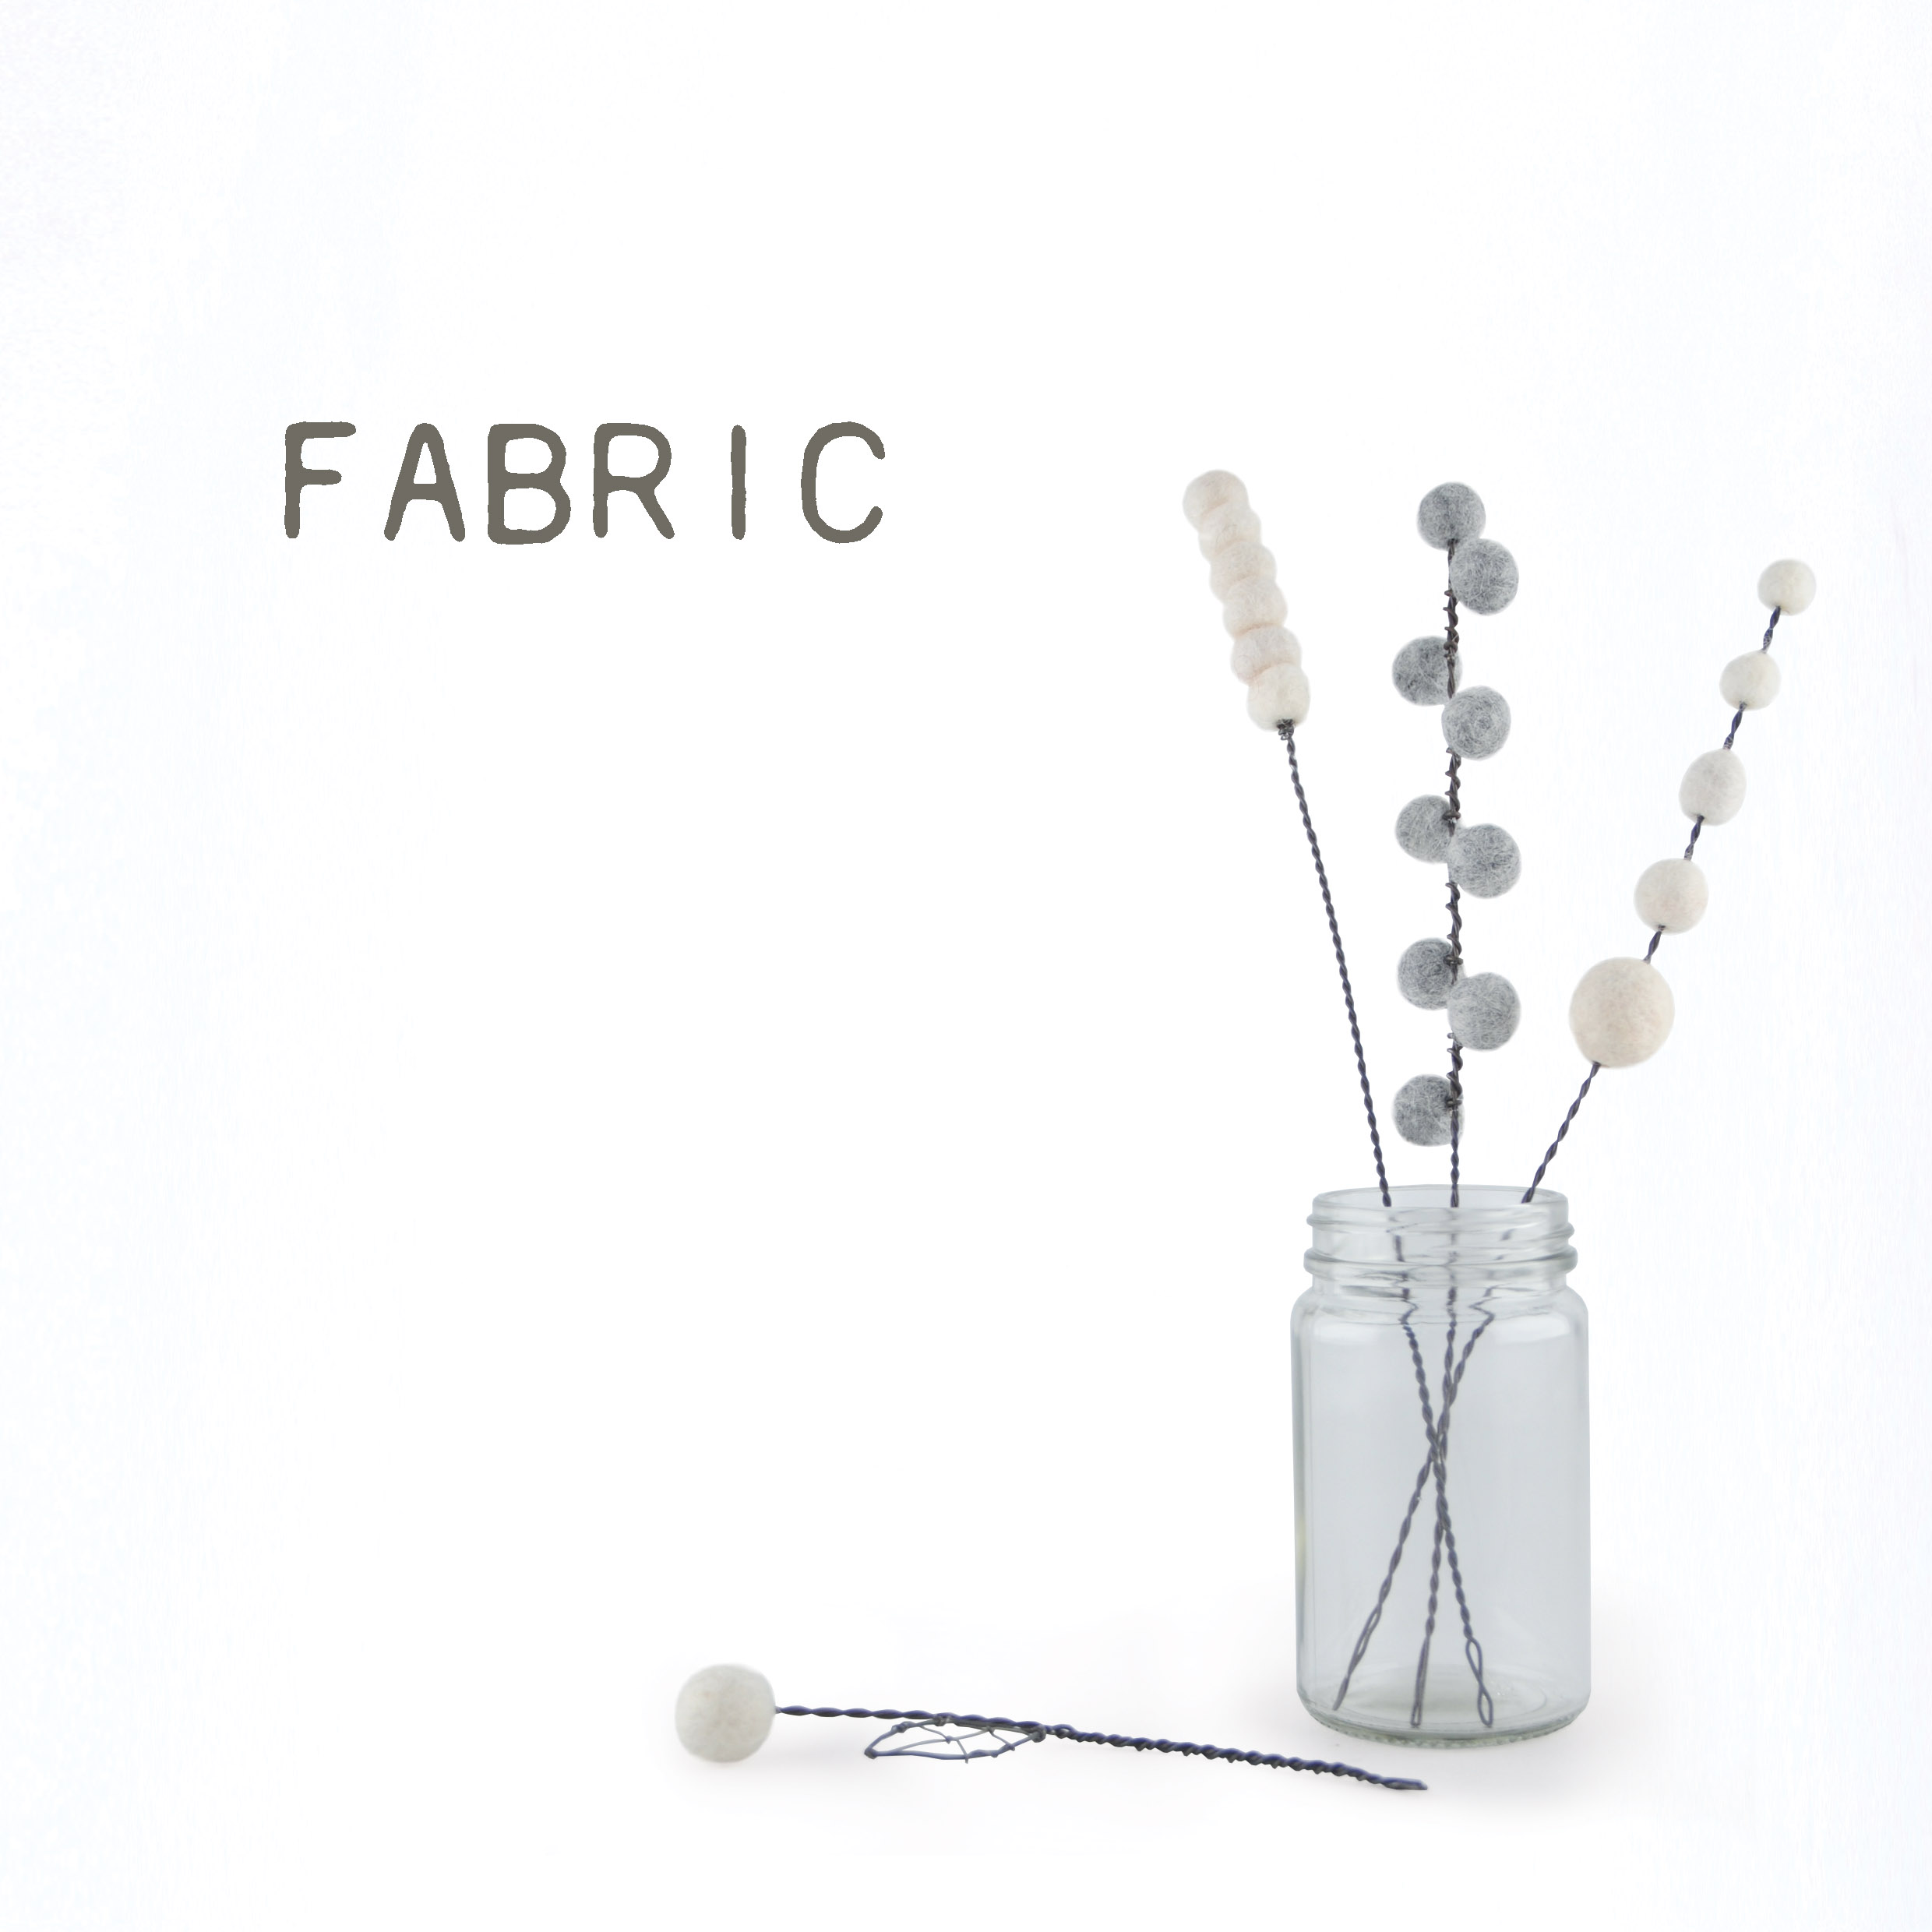 Fabric products & Haberdashery